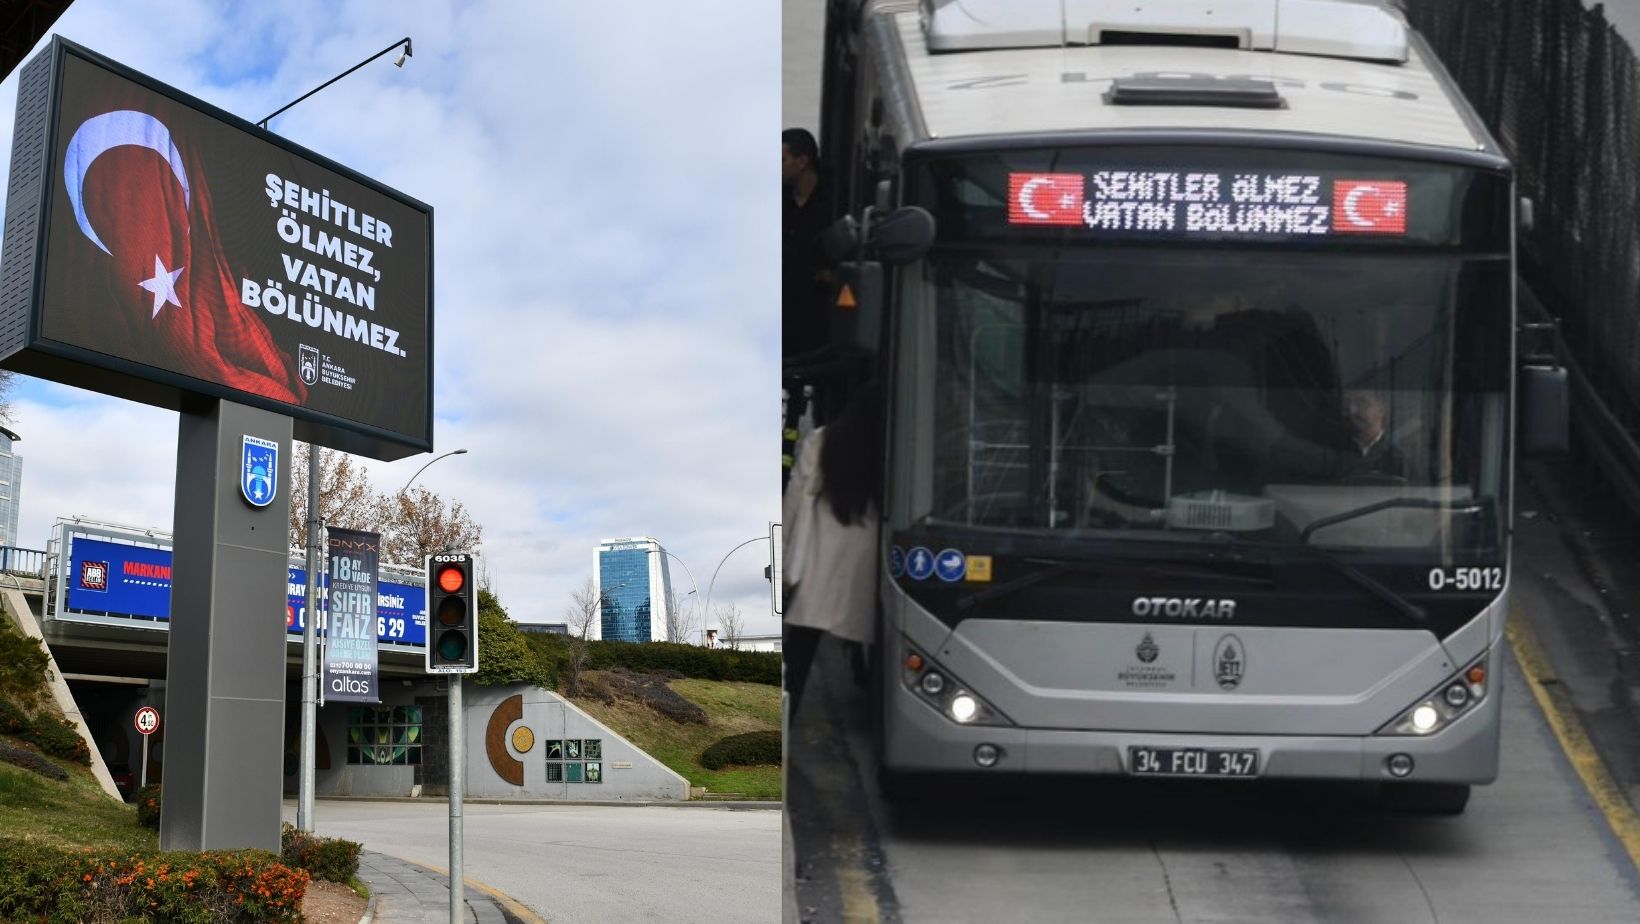 ABB ve İBB kentteki otobüs ve tabelalara “Şehitler ölmez, vatan bölünmez” yazısı yansıttı